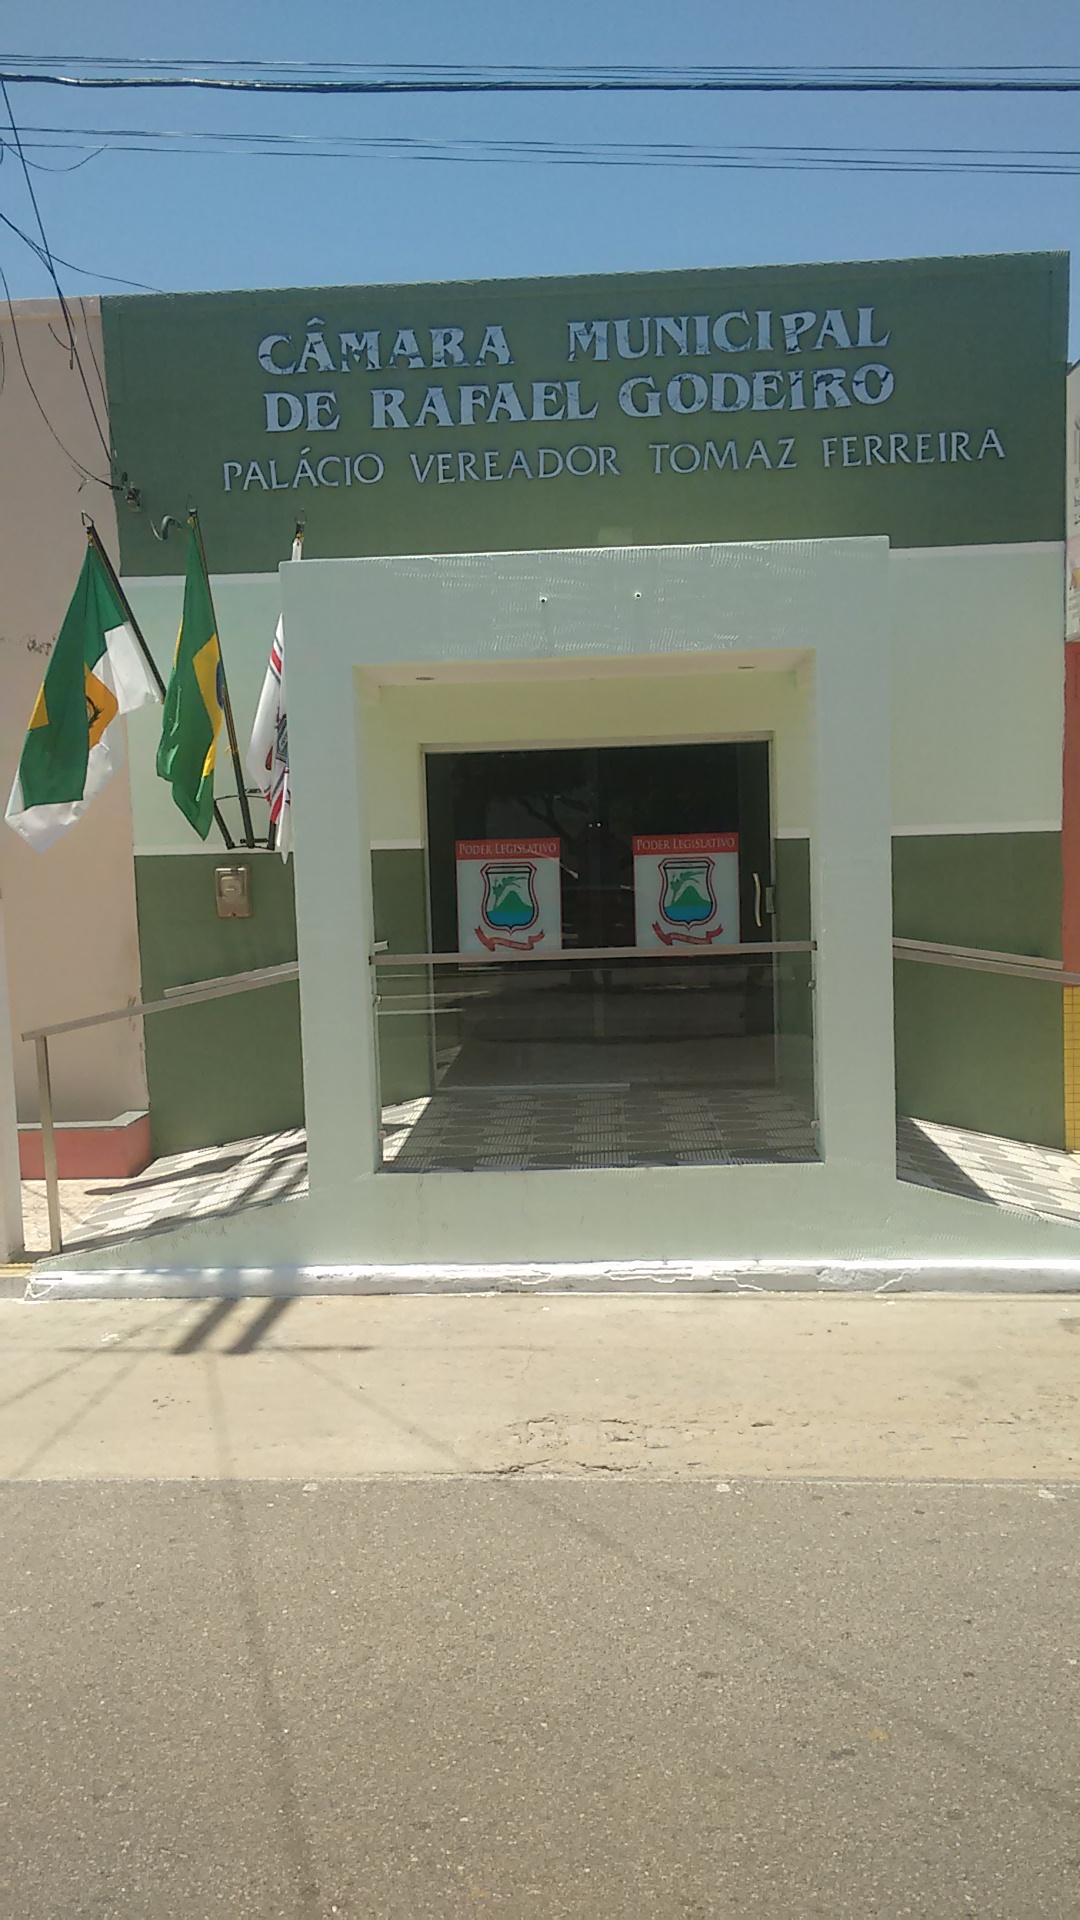 Bem vindo ao novo Portal da Câmara Municipal de Rafael Godeiro